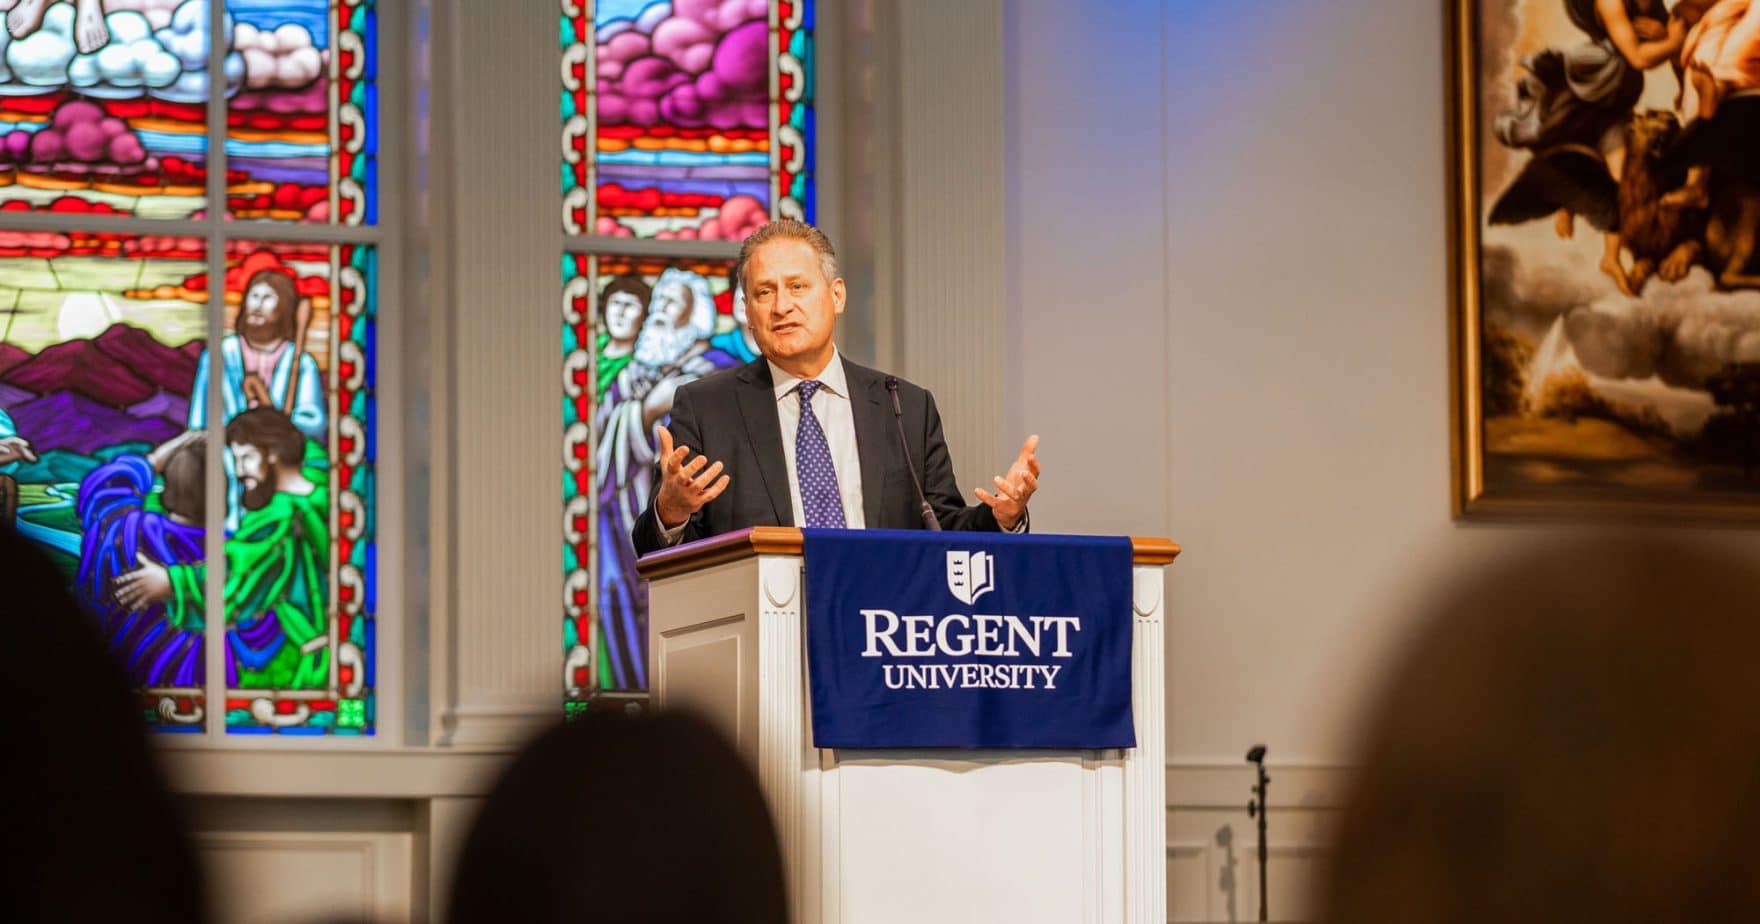 Steve Green Hobby Lobby President speaks at Regent University